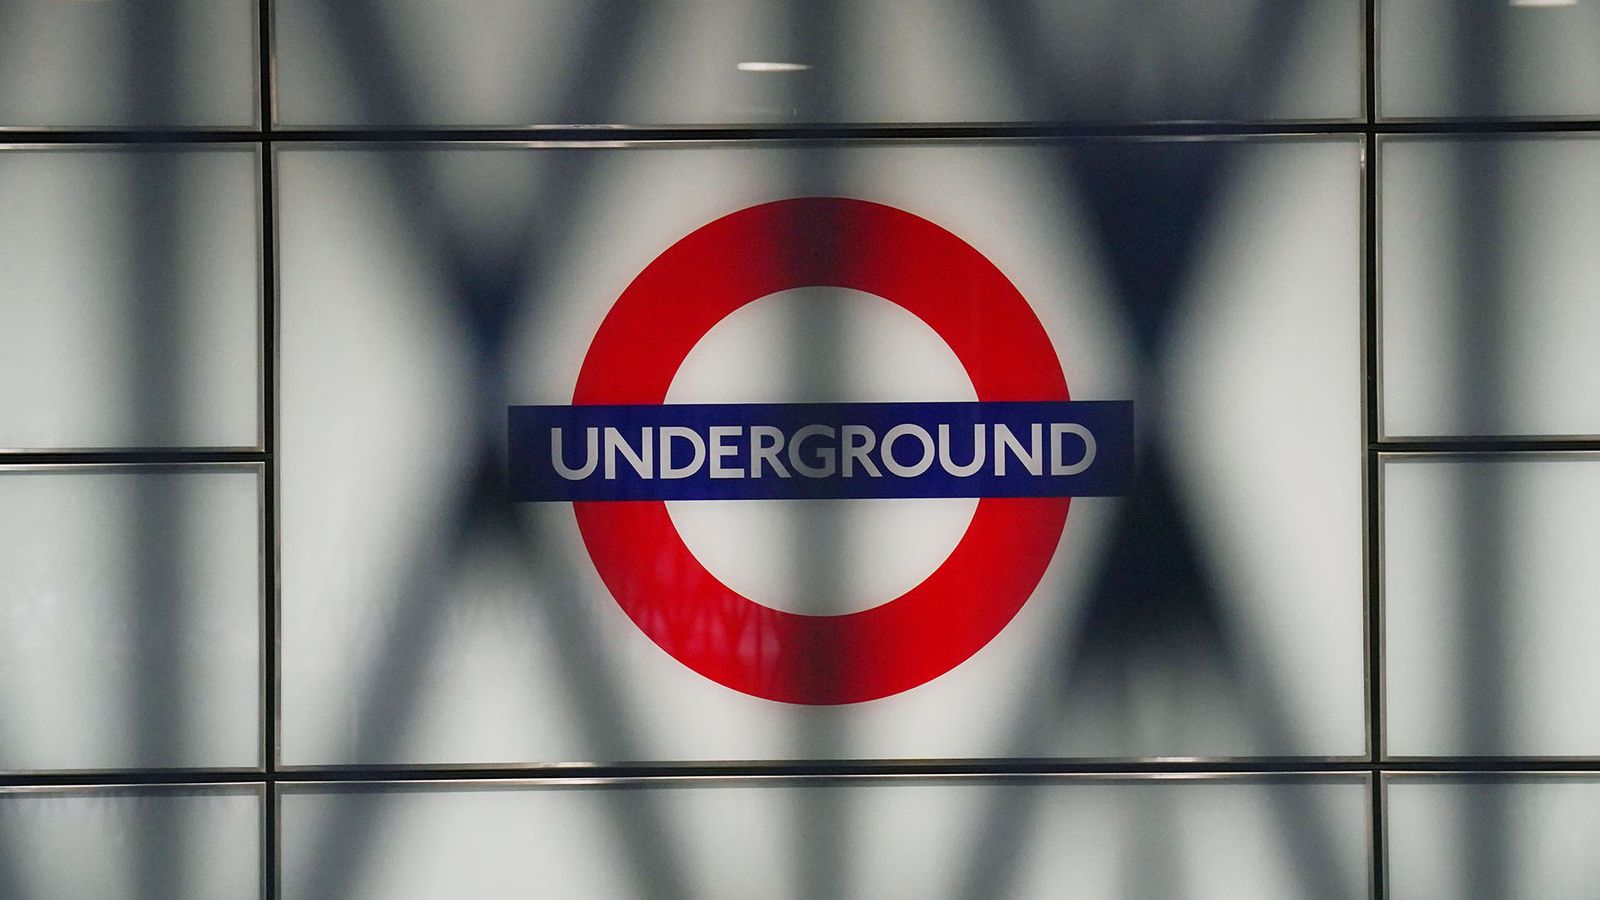 Métro de Londres : liste complète des stations de métro à capturer pour Google Street View |  Actualités scientifiques et technologiques